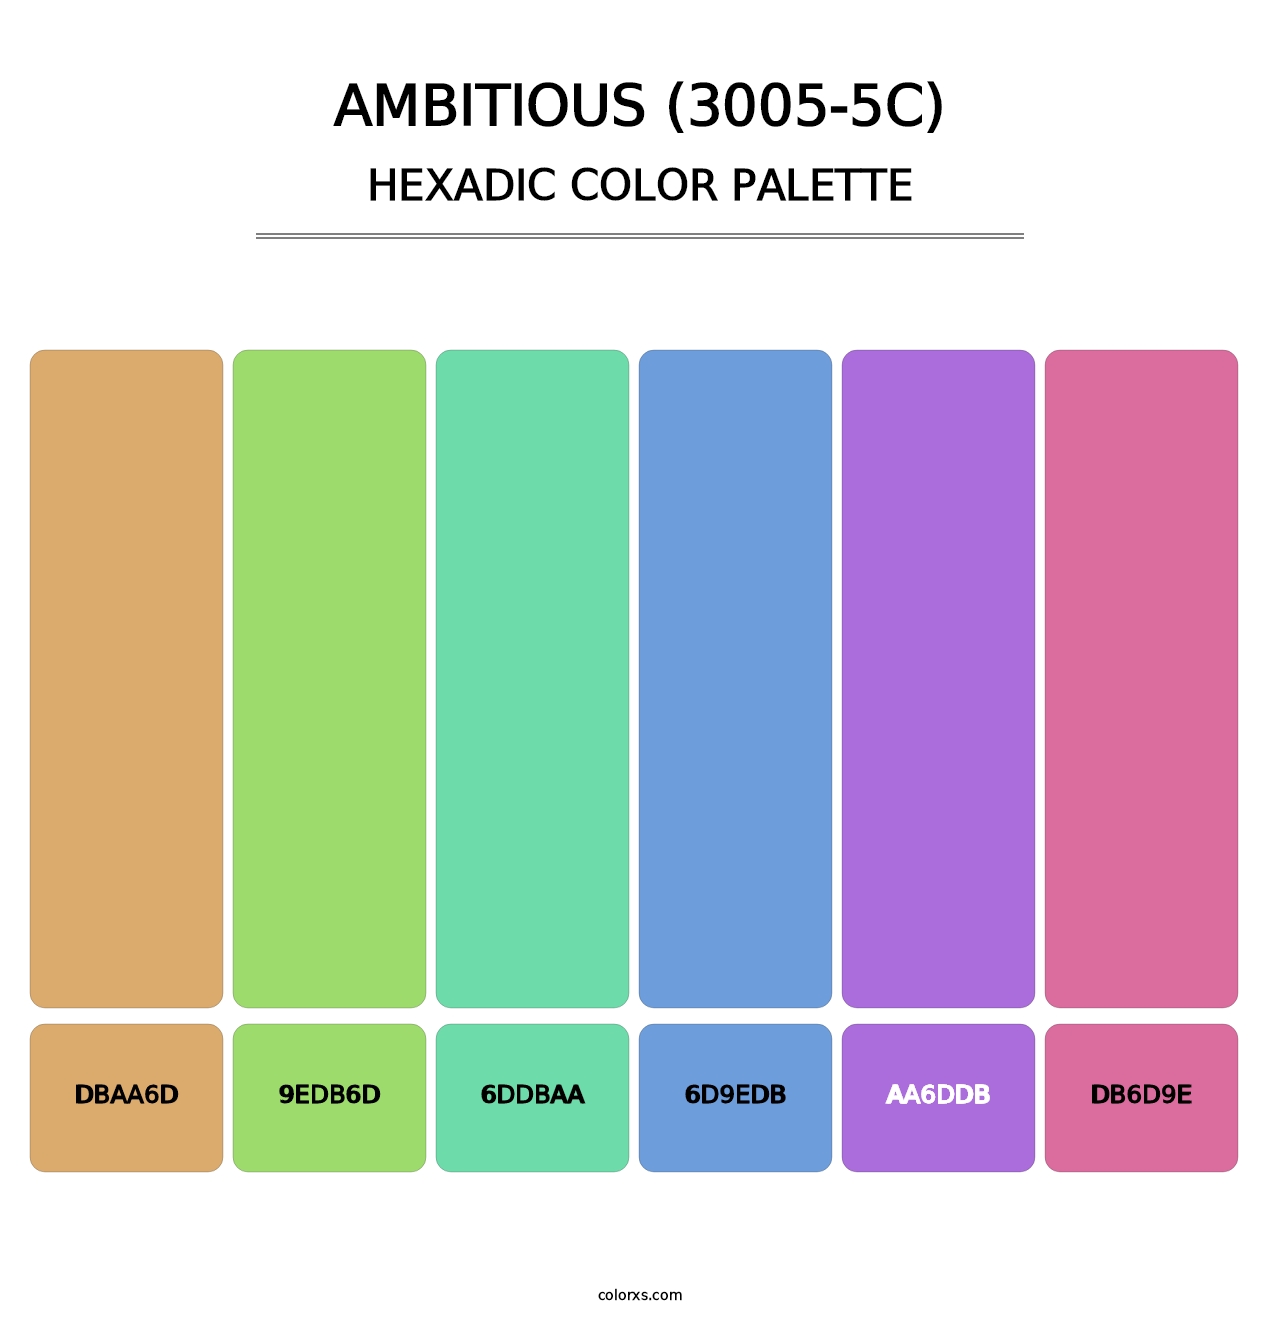 Ambitious (3005-5C) - Hexadic Color Palette